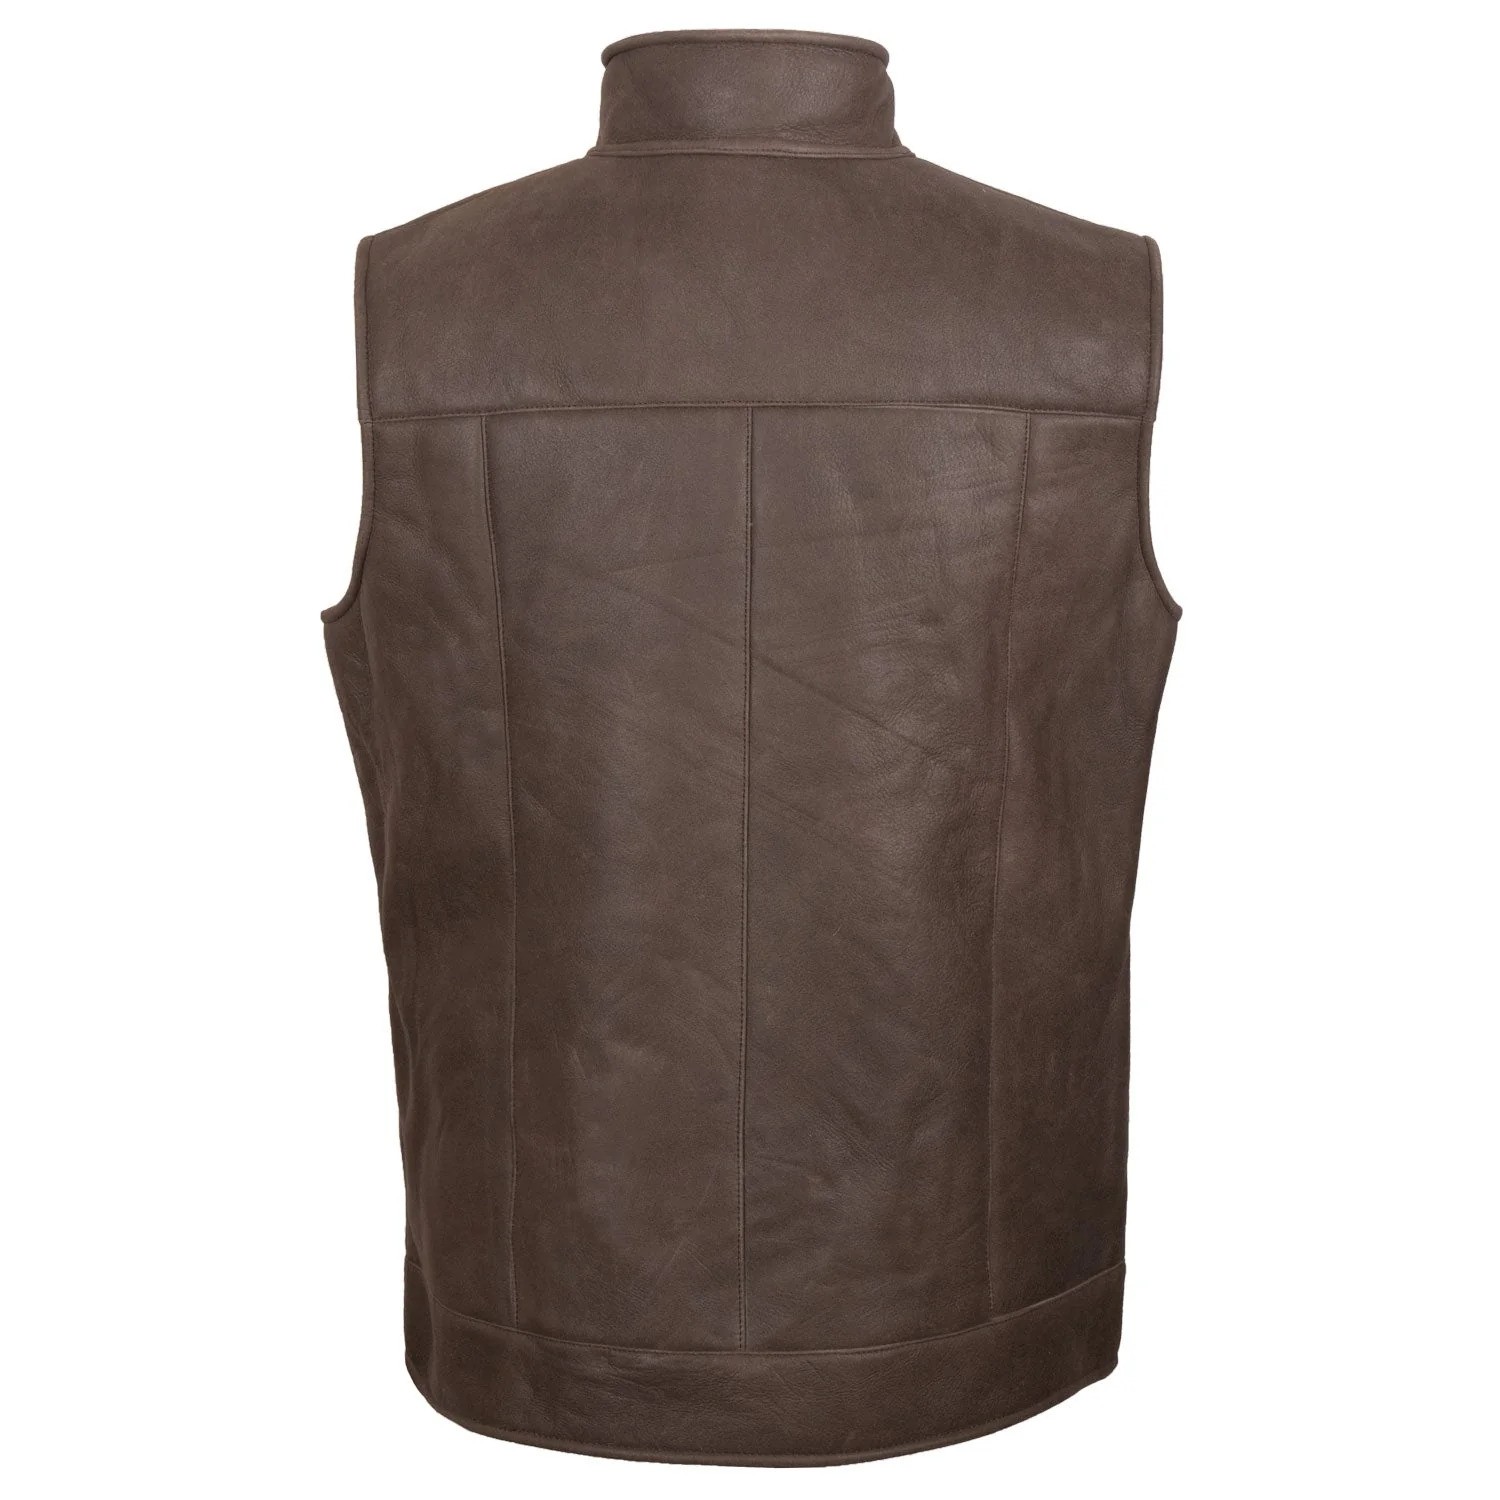 Men's Brown & Beige Sheepskin Leather Gilet